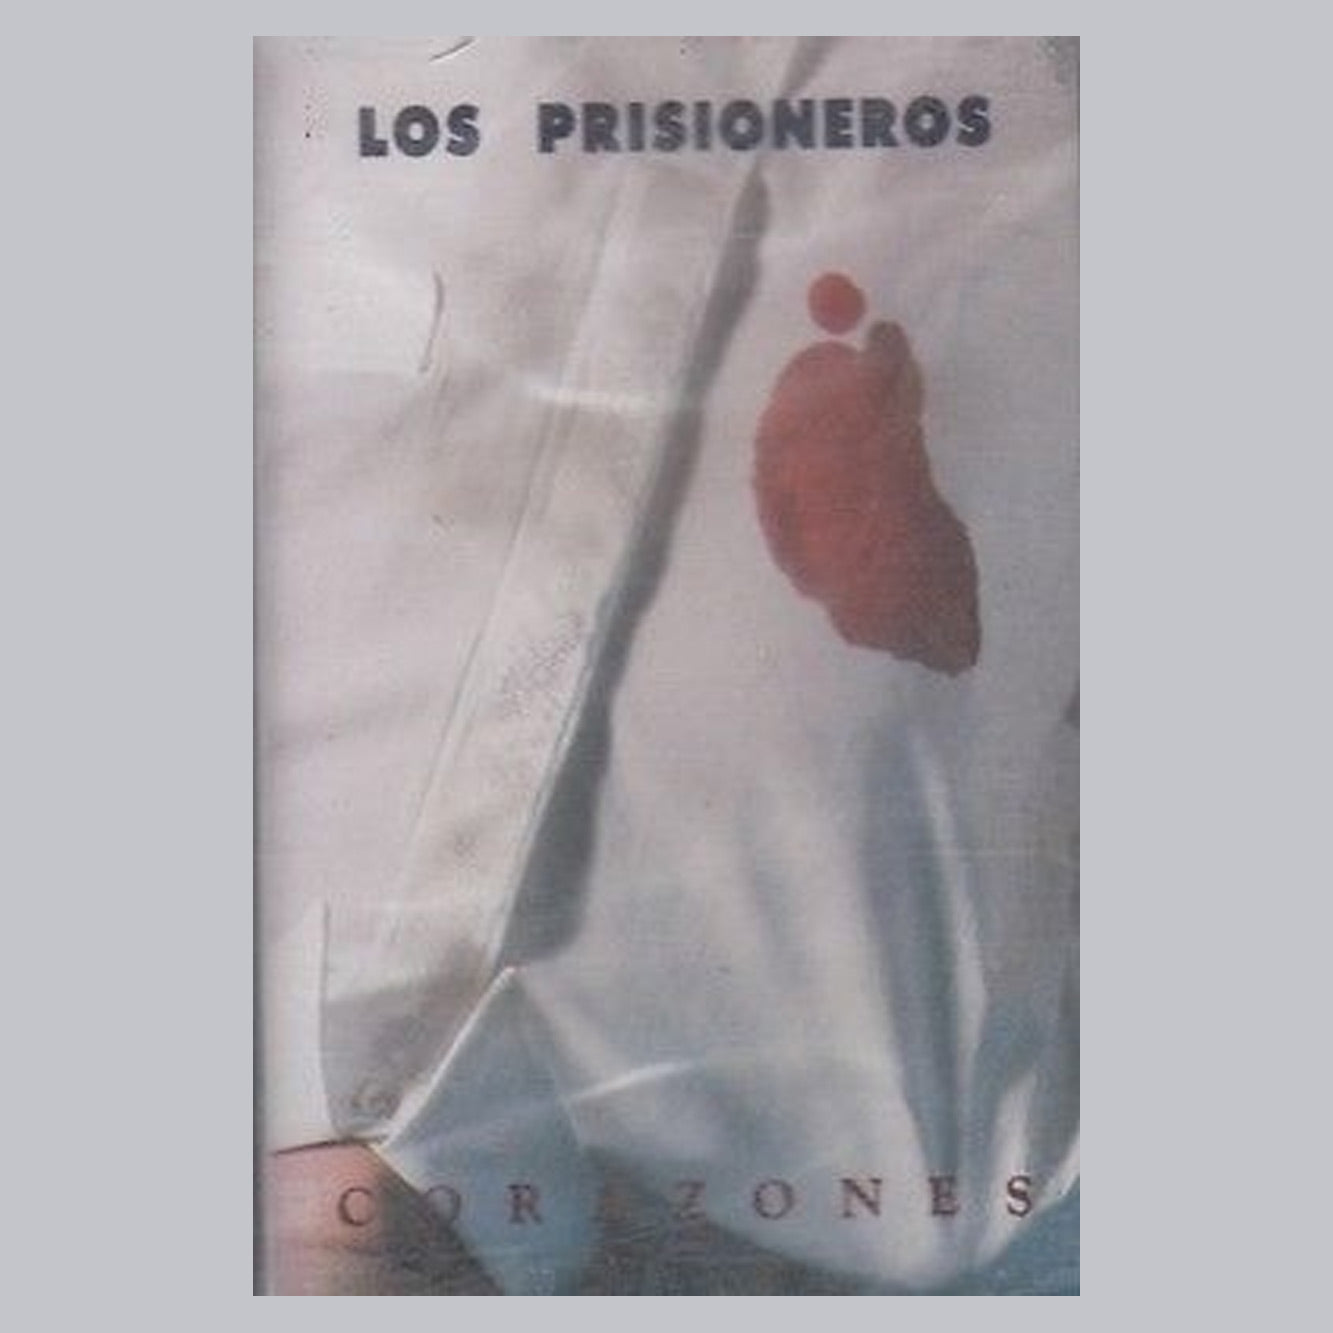 Los Prisioneros - Corazones (Cassette)